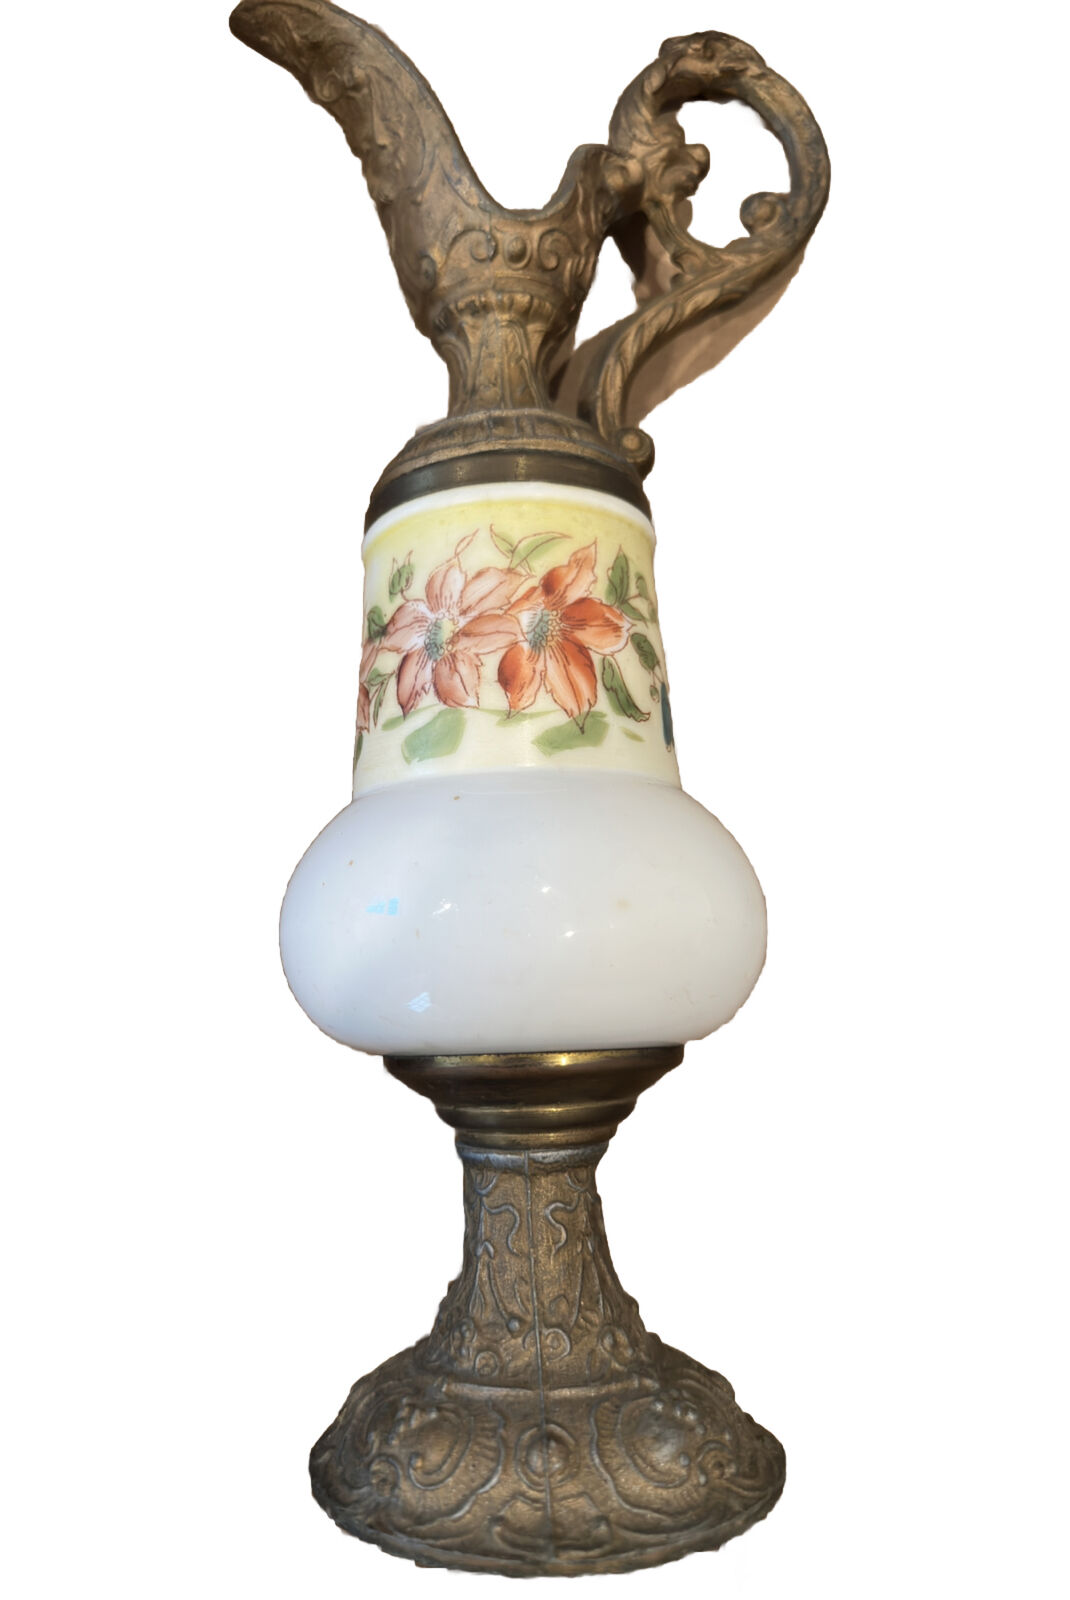 Vintage Victorian Decorative  Metal Mantle Ewer Vase Pitcher Cherub Finial  